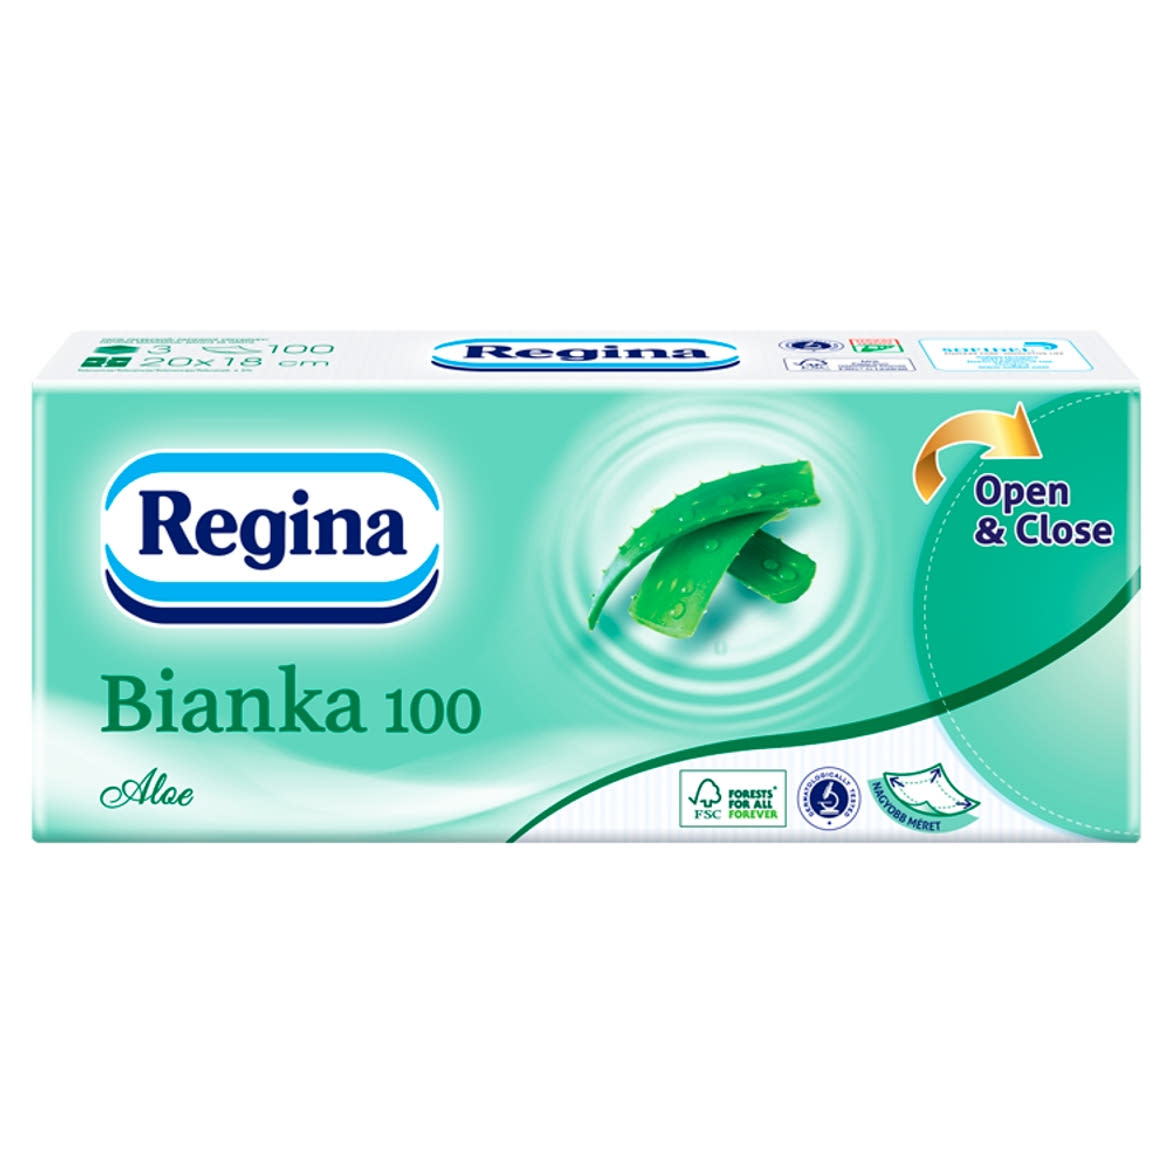 Regina Bianka 100 Aloe papír zsebkendő 3 rétegű 100 db